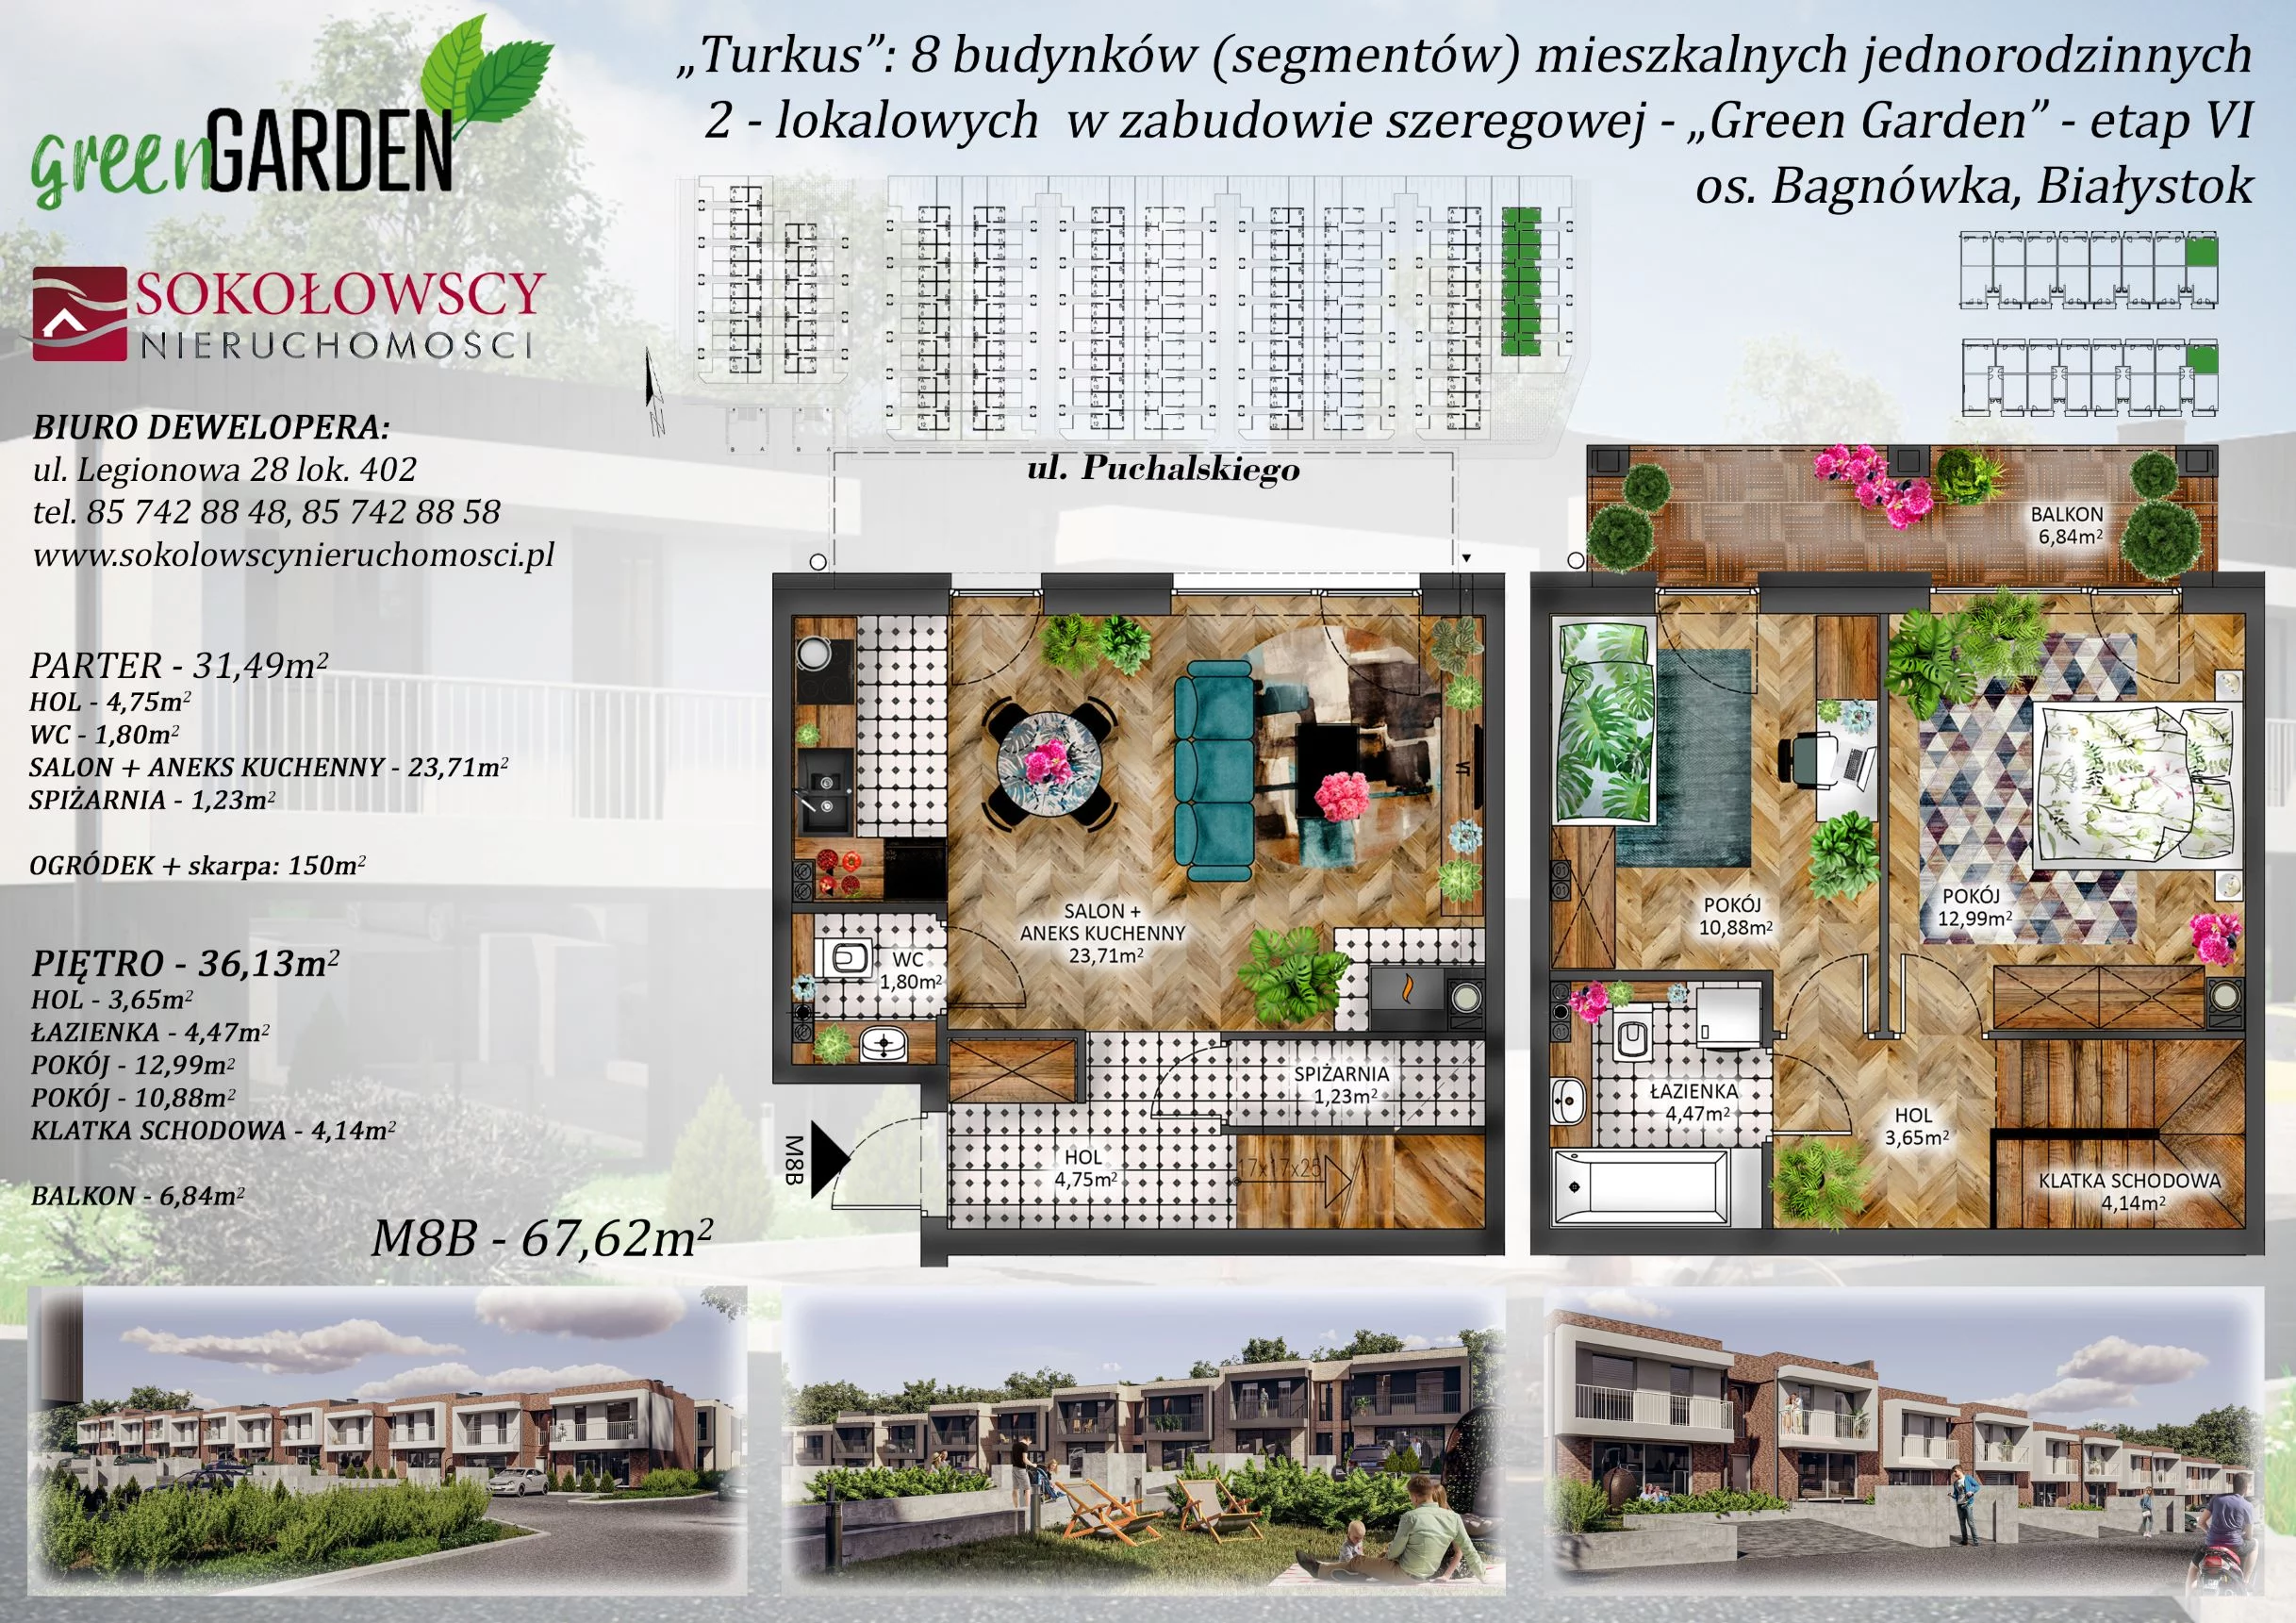 Mieszkanie 67,62 m², parter, oferta nr 8B, Green Garden etap 6, Białystok, Bagnówka, ul. Karola Puchalskiego